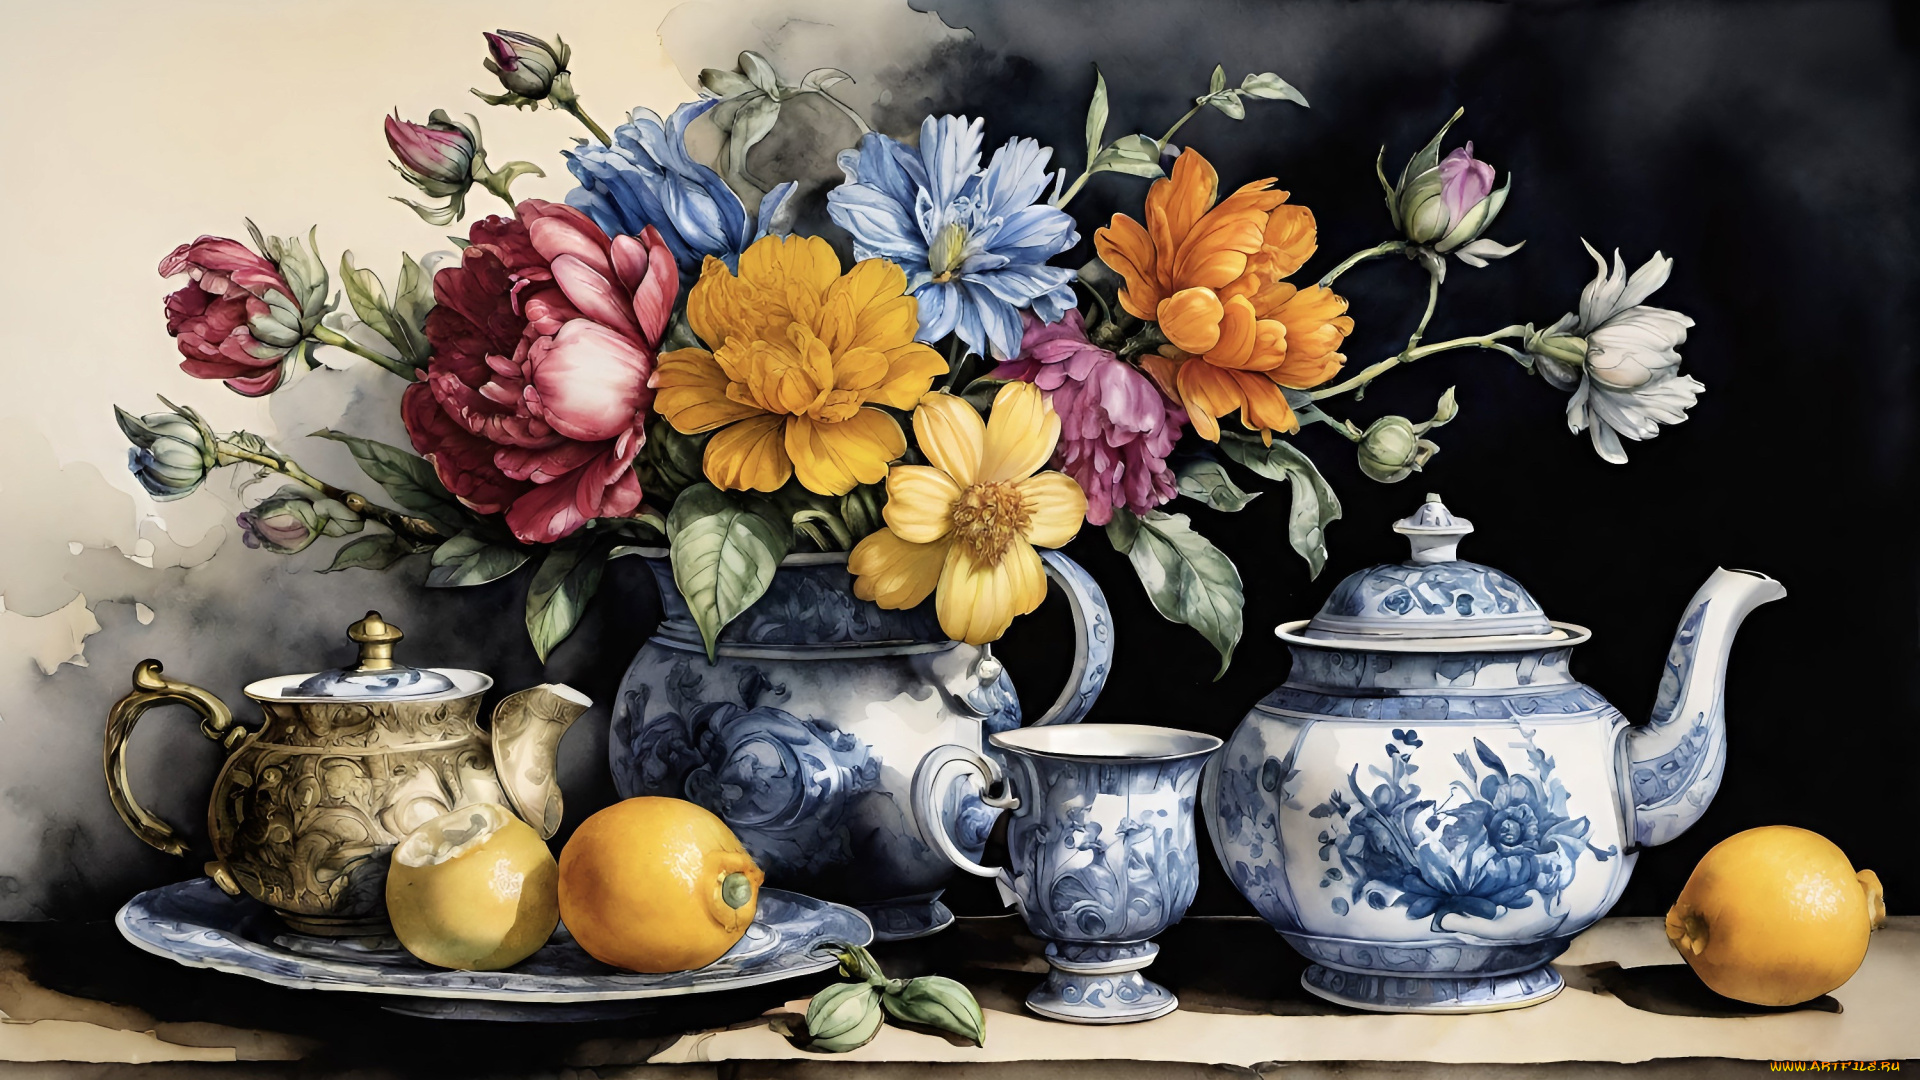 рисованное, цветы, темный, фон, стол, букет, чайник, тарелка, чашка, посуда